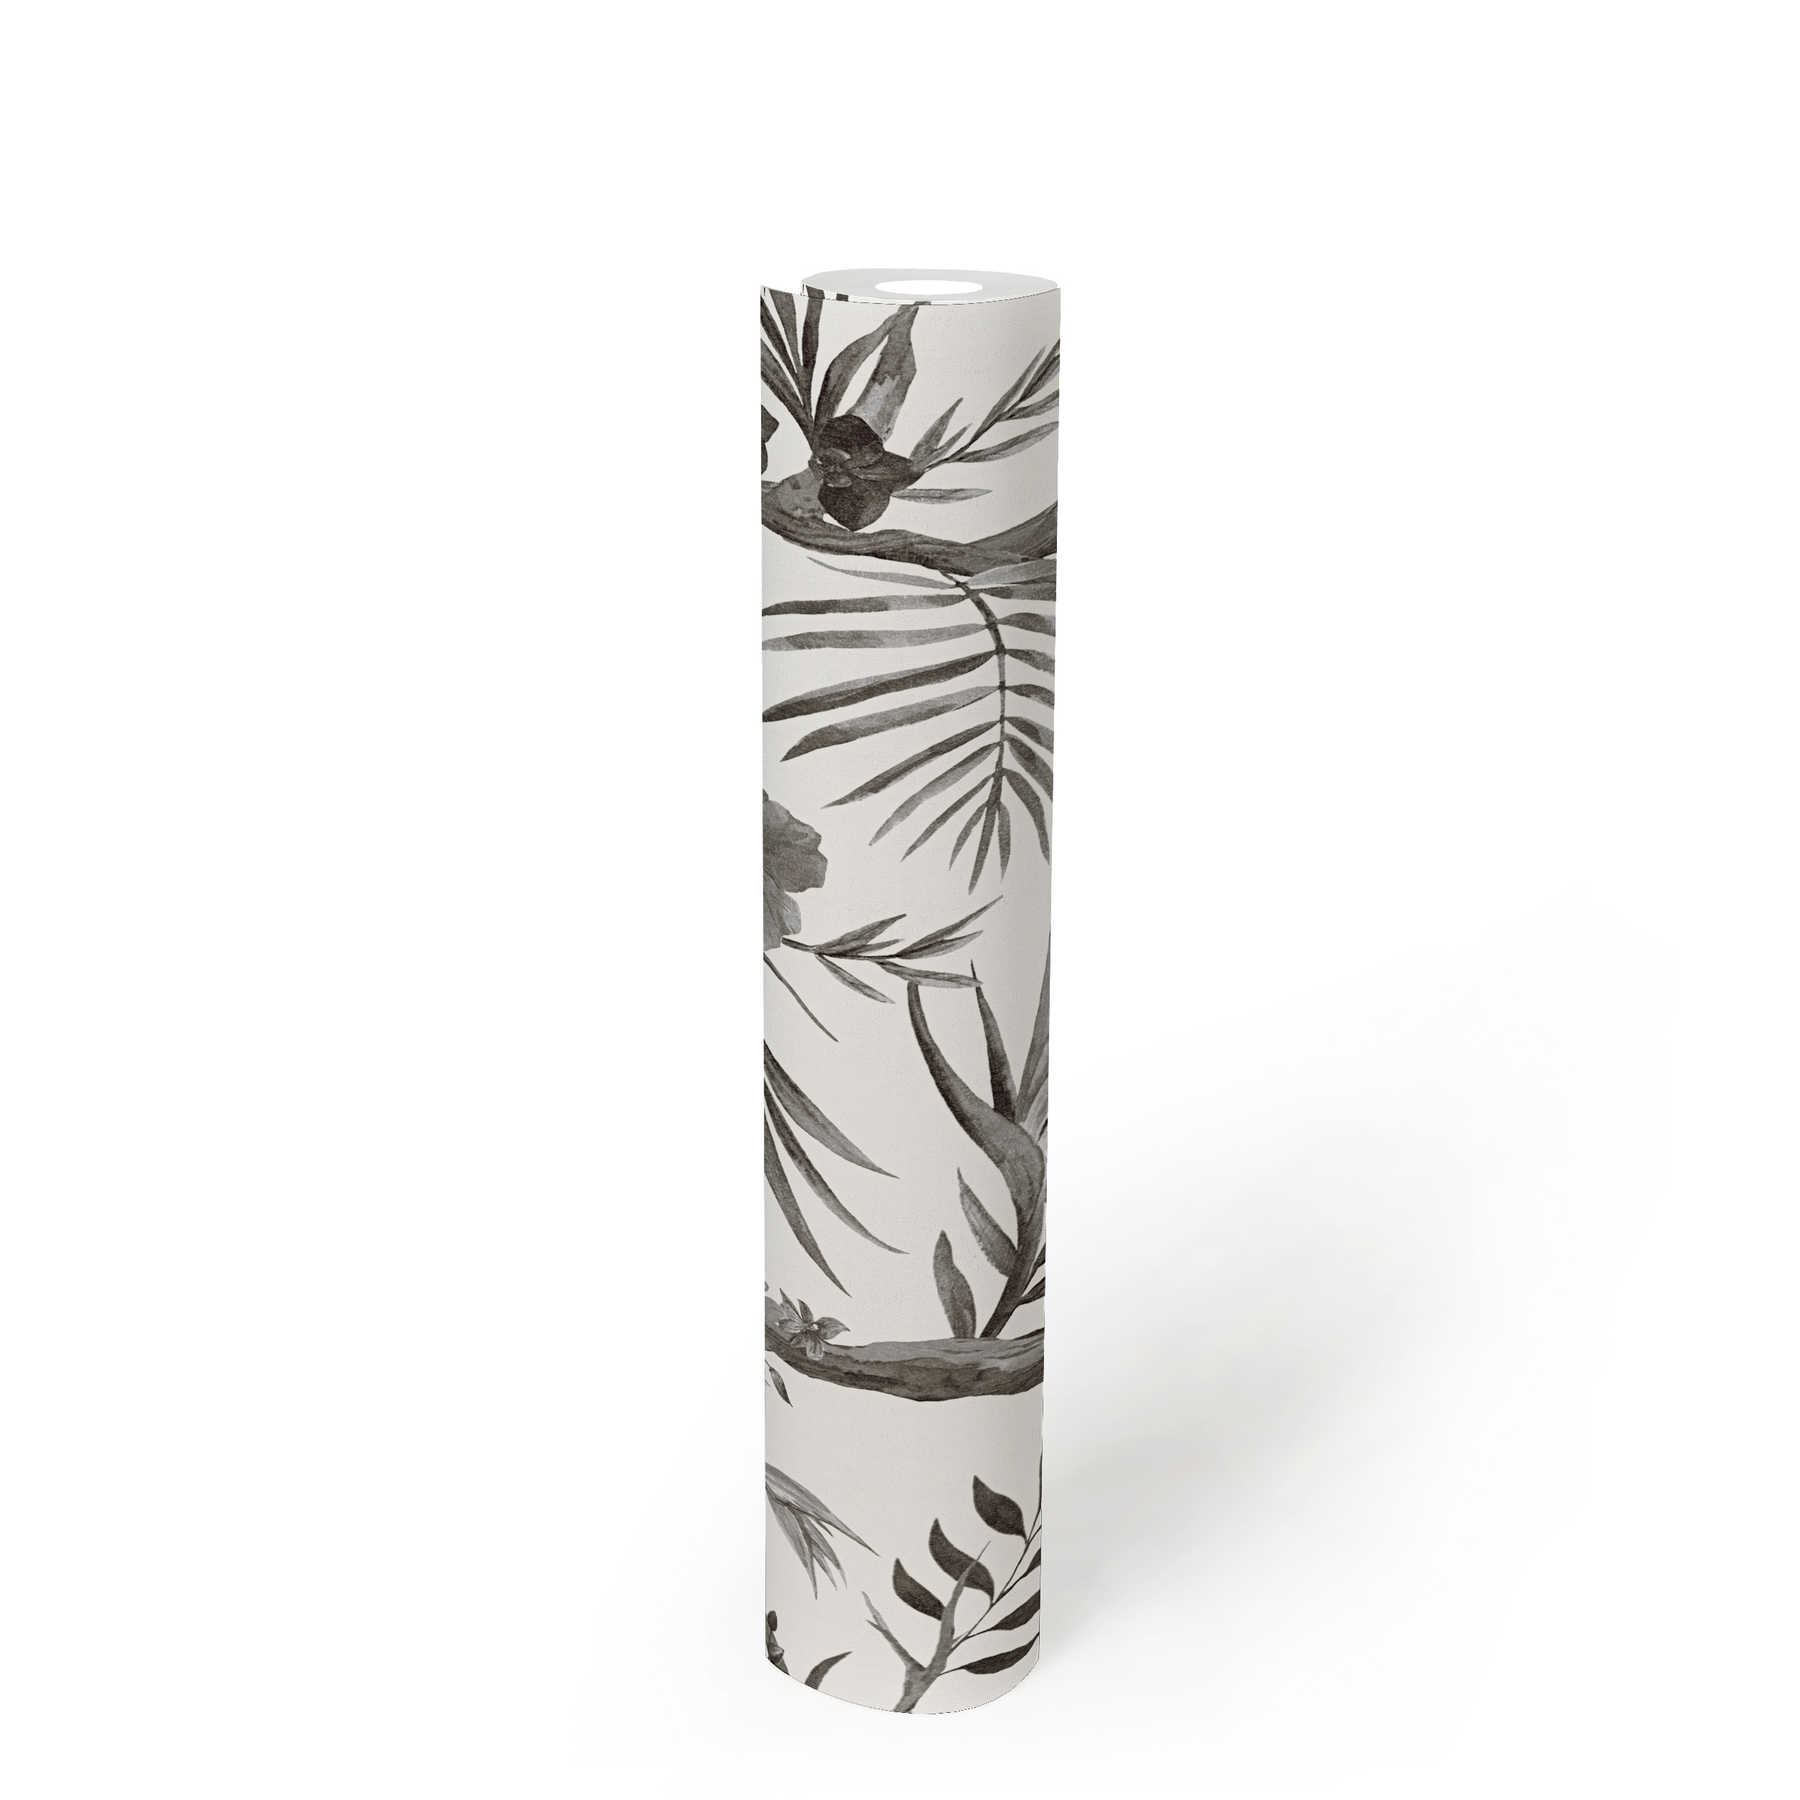             Carta da parati in tessuto non tessuto Jungle flowers in colori tenui - nero, bianco, grigio
        